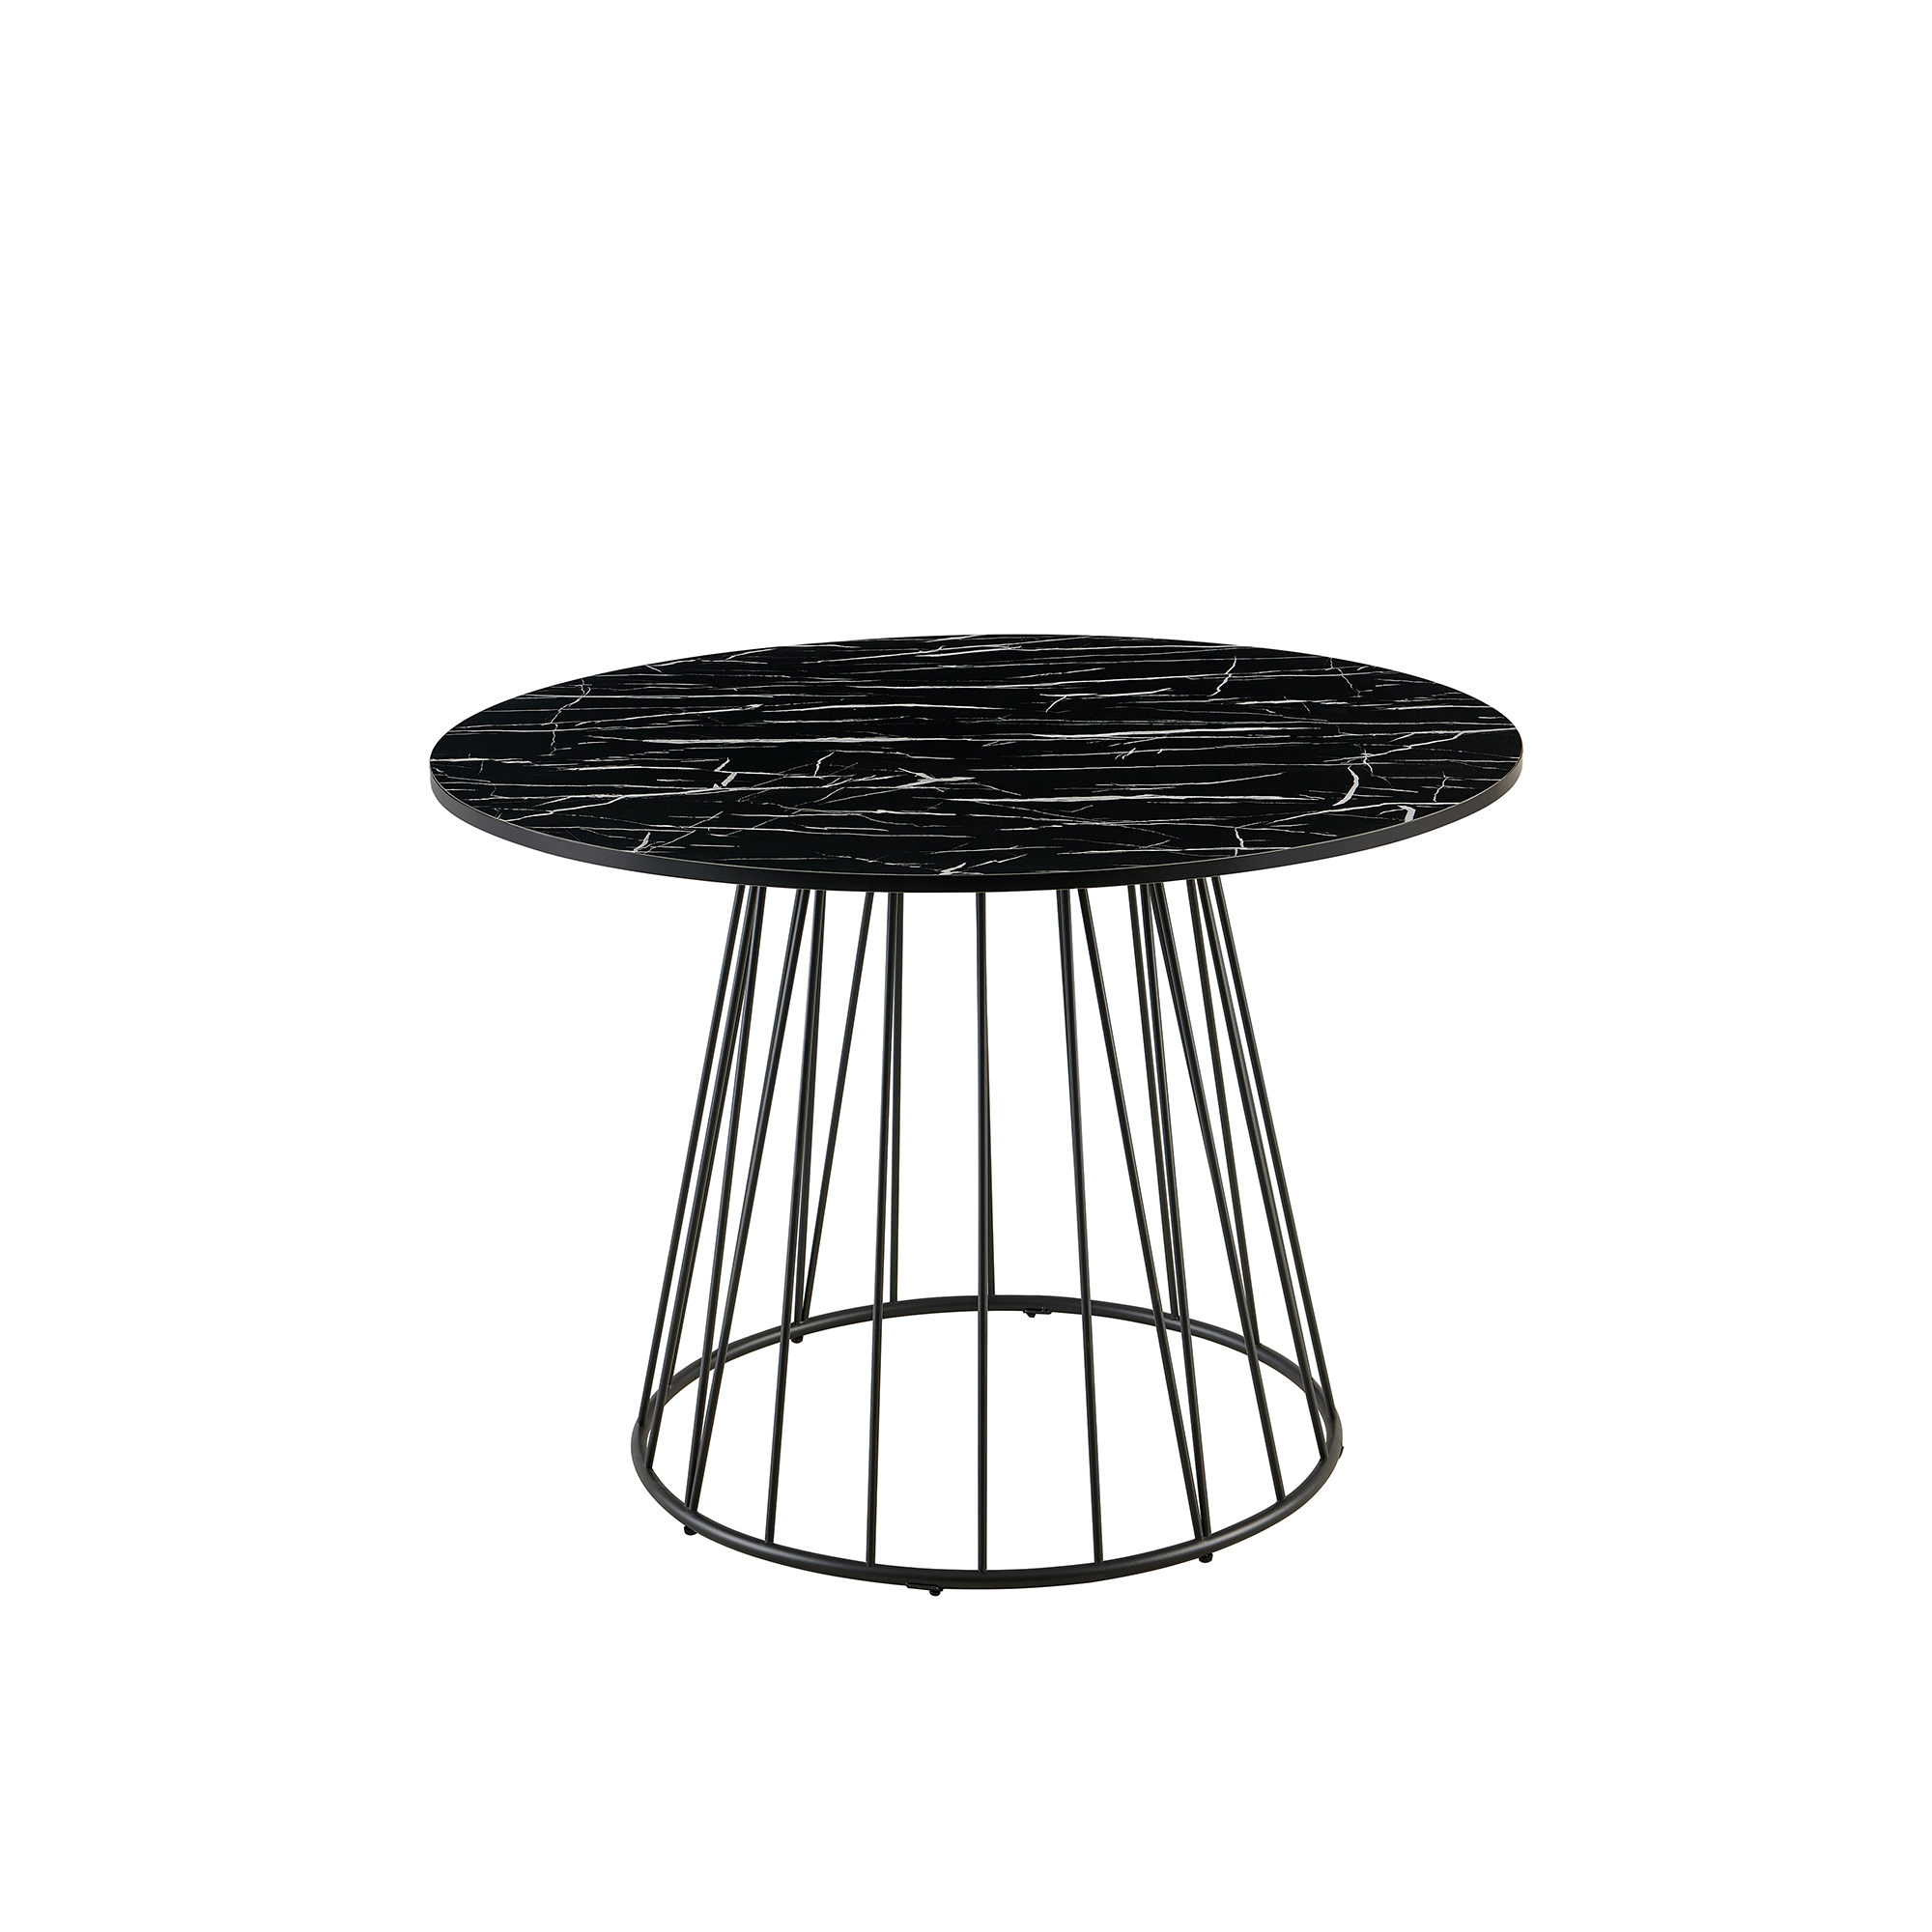 Table à manger ronde design effet marbre pied central en métal noir